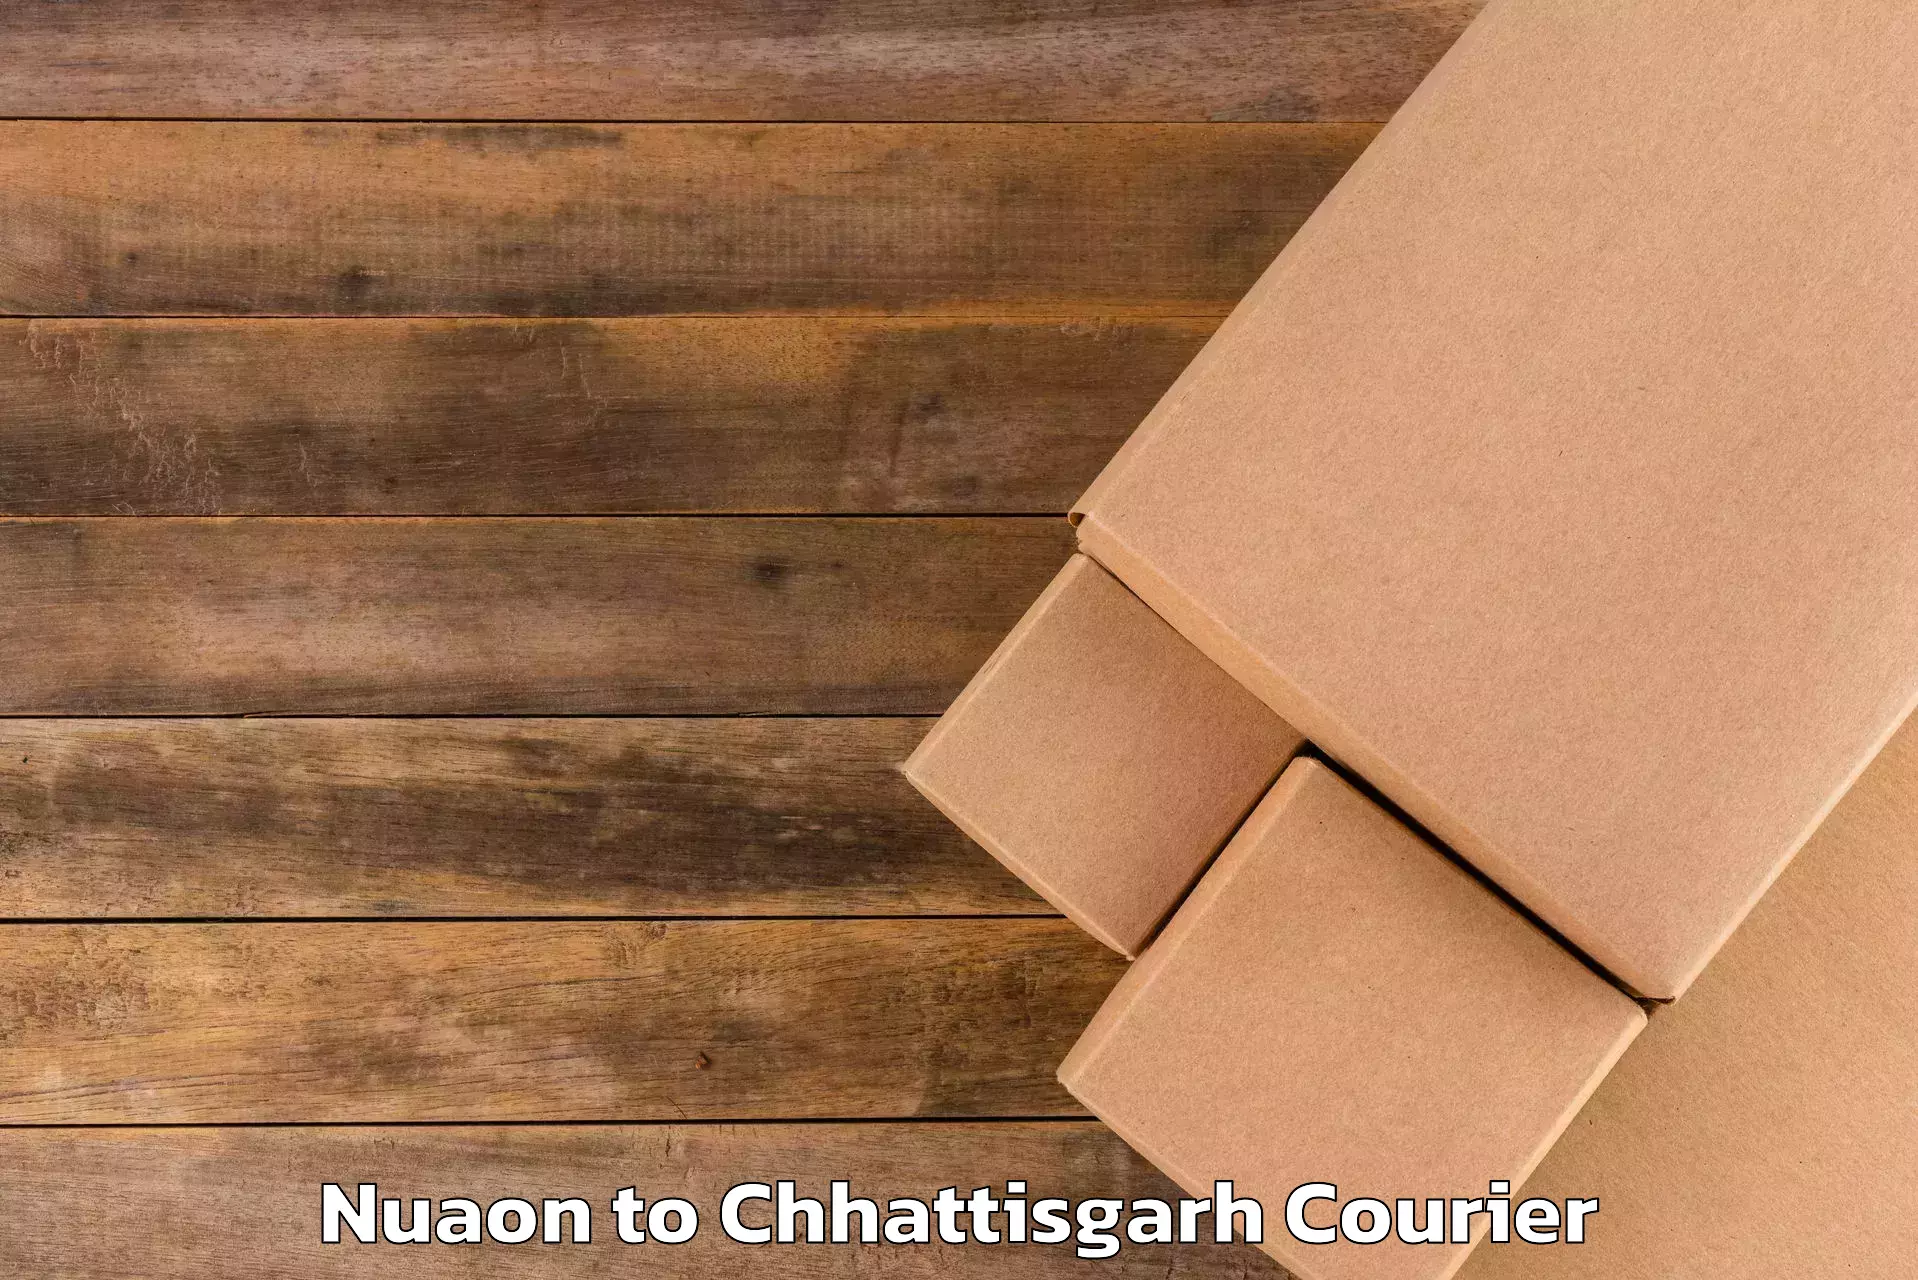 Luggage delivery estimate Nuaon to Pithora